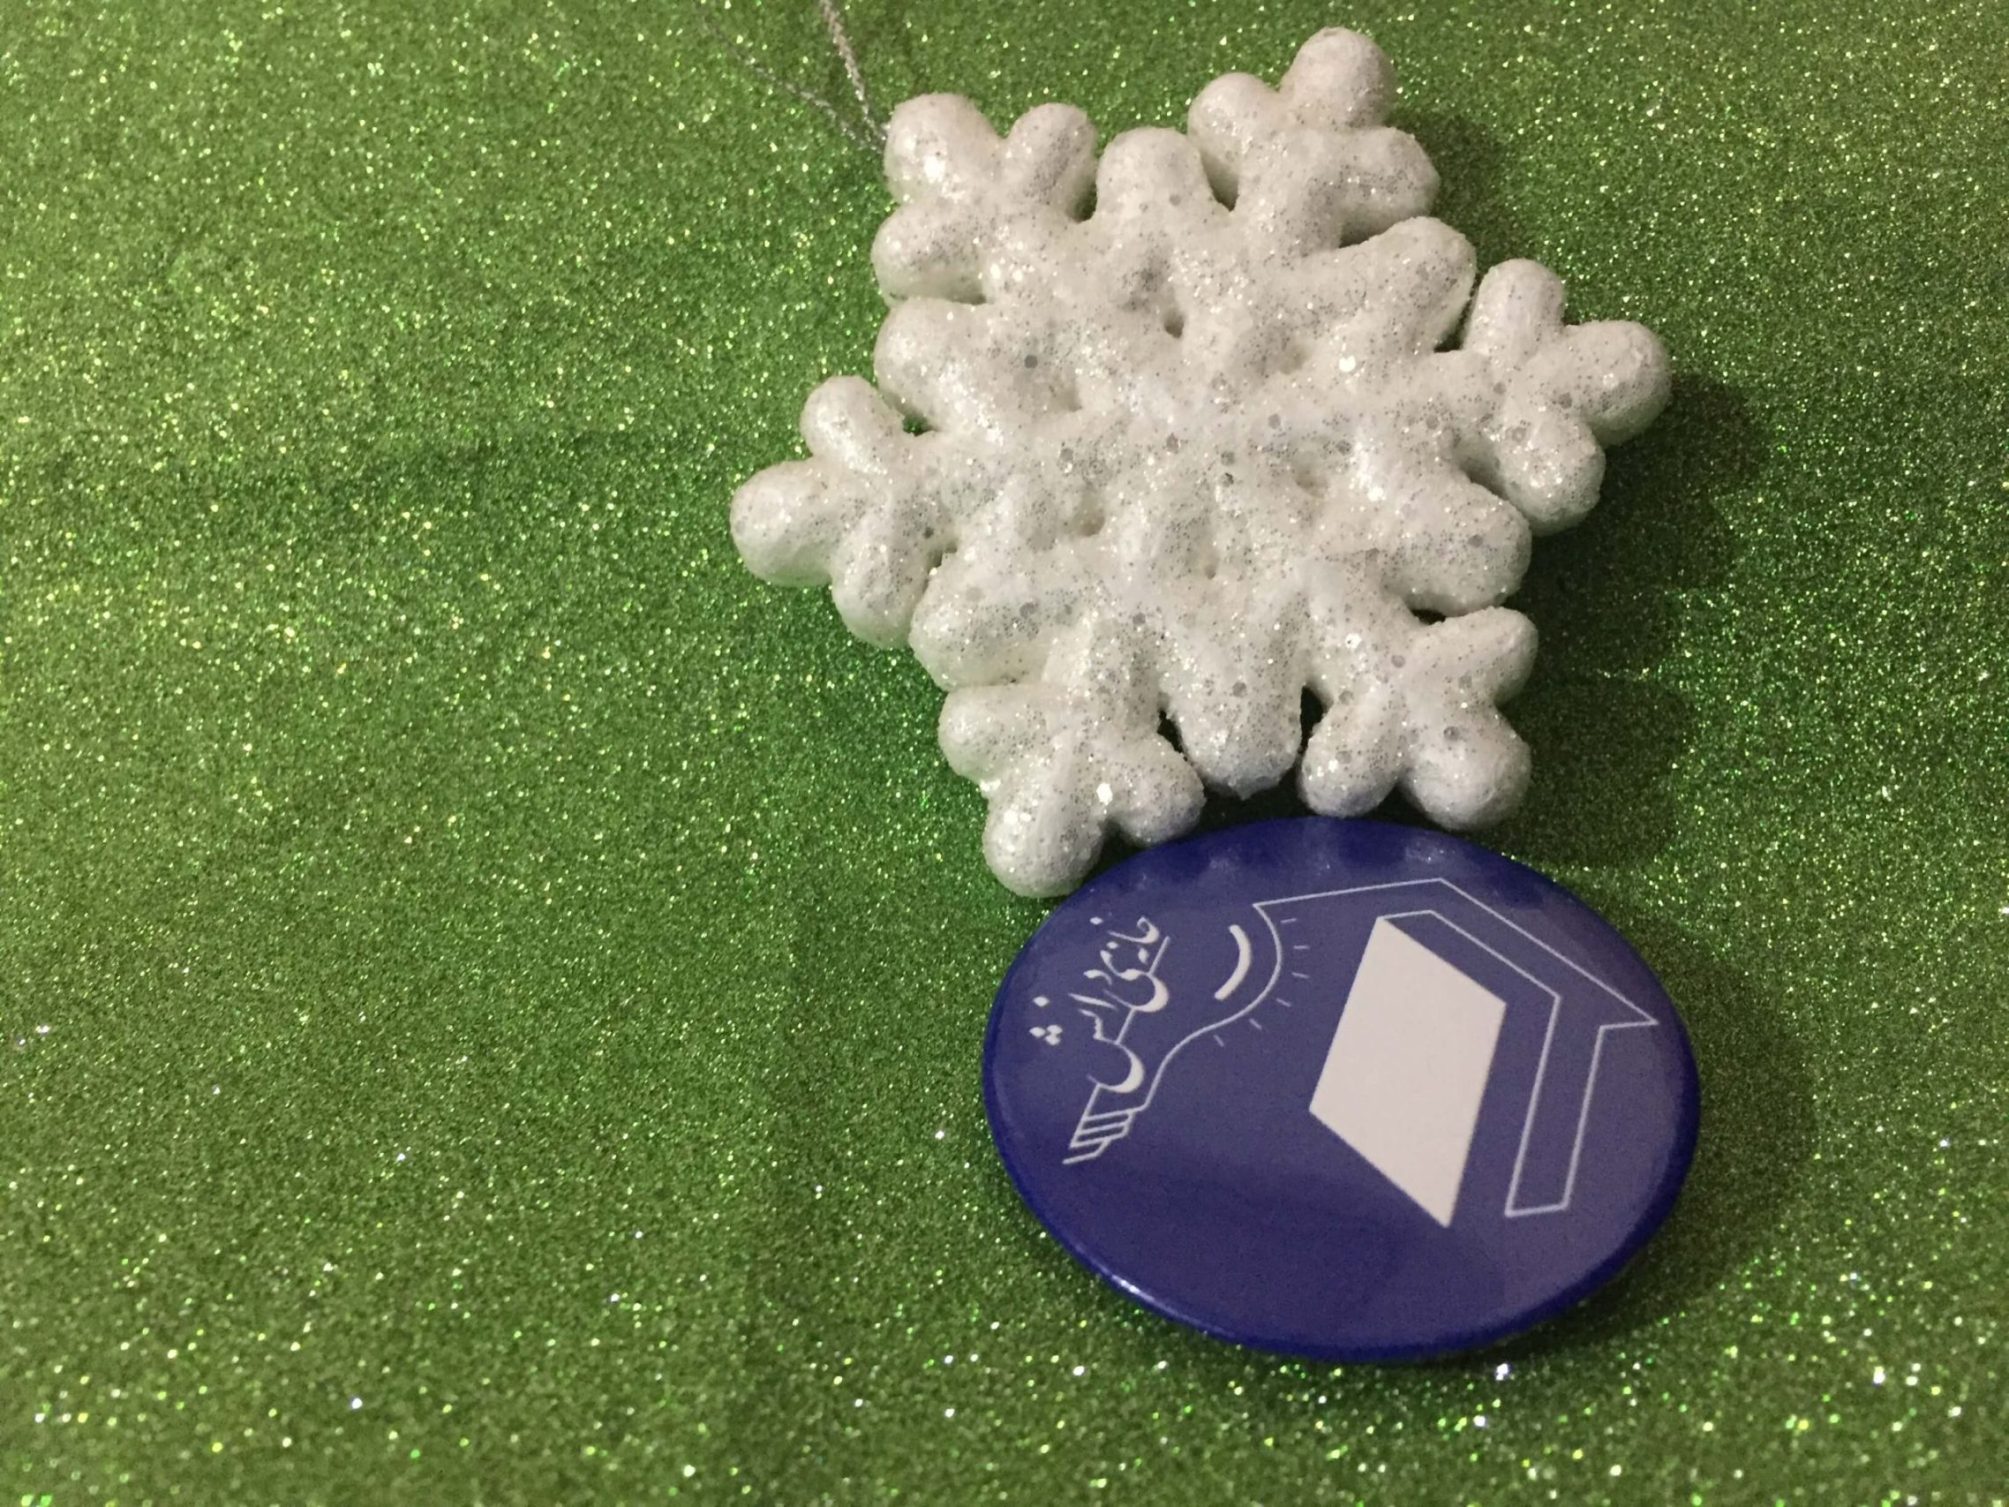 بنیاد ثبوتی خانه دانش رویداد دانه برف دانش‌آموز کپلر لیبرخت شش‌ضلعی منشور بخار آب منجمد مدل ریاضی